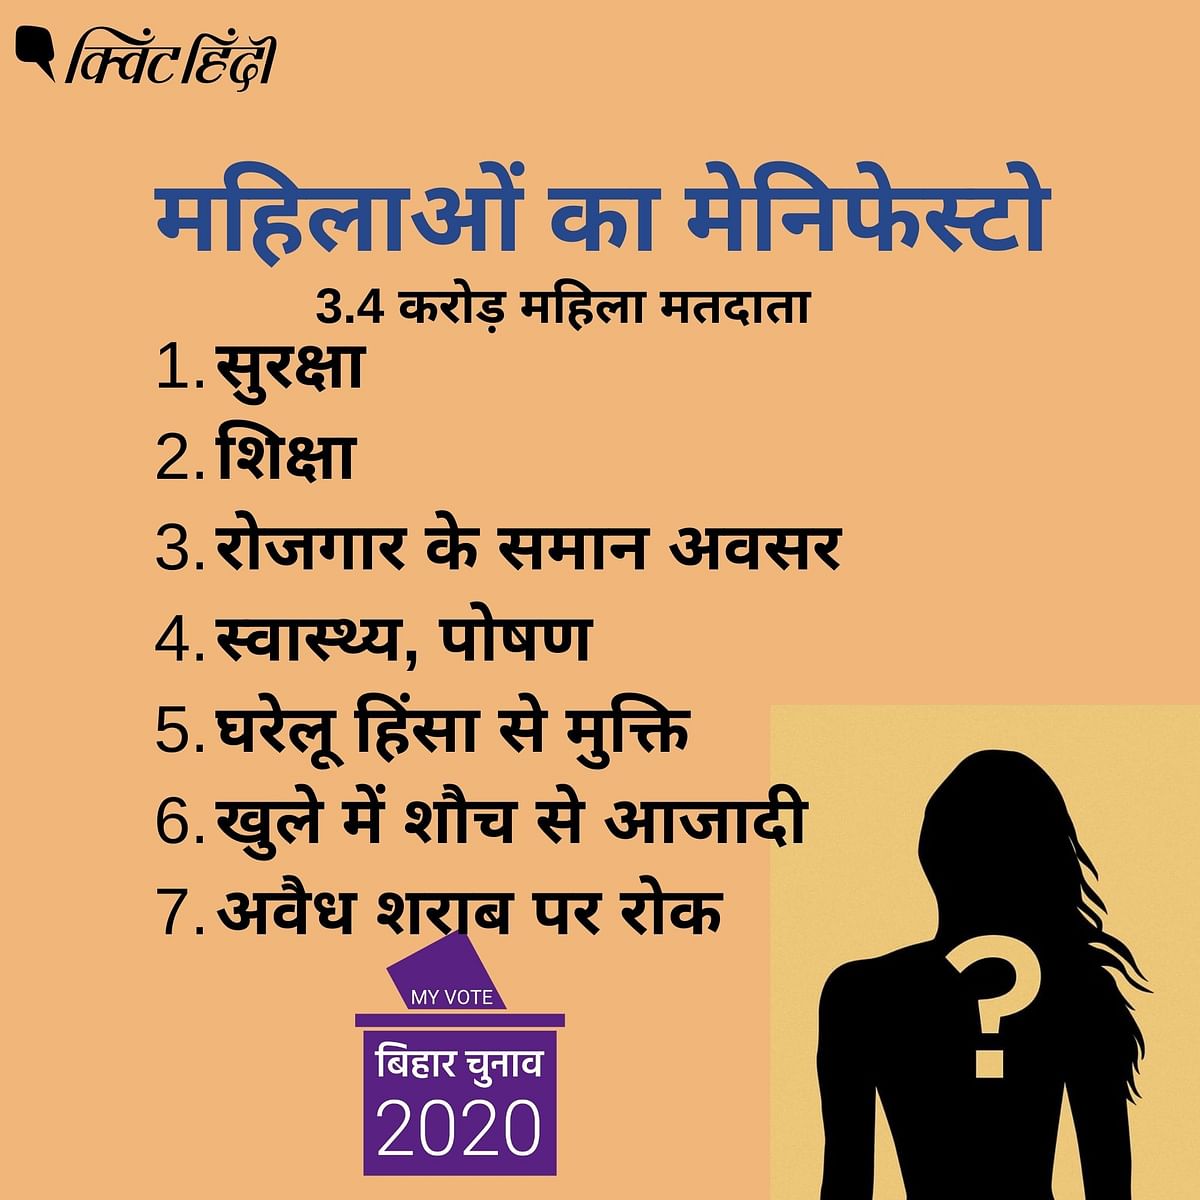 बिहार में महिलाओं की राजनीतिक पसंद इन मुद्दों पर निर्भर करेगी?